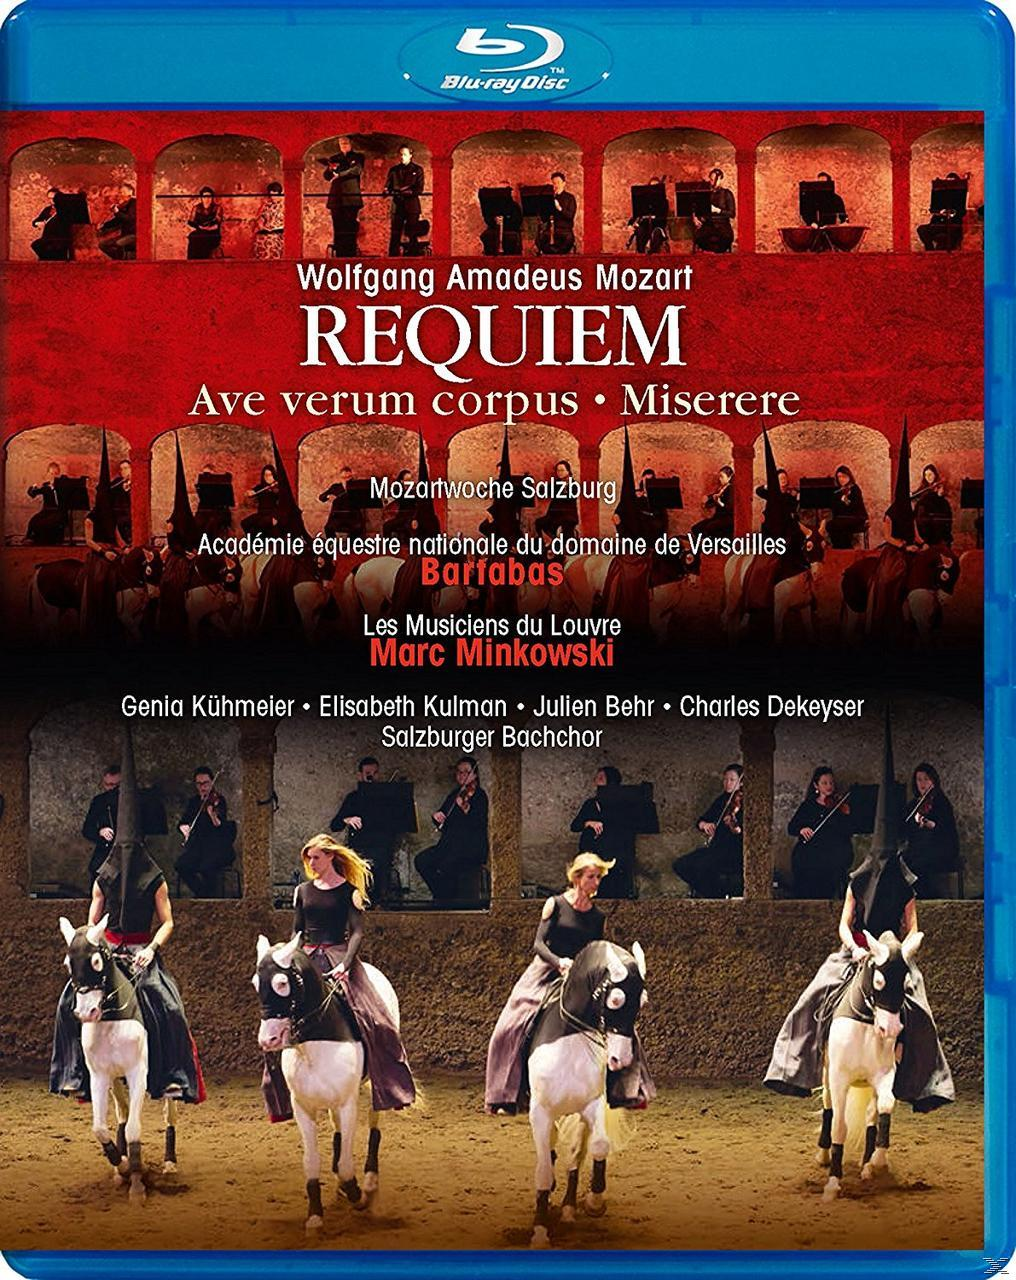 - VARIOUS, Les Académie Salzburger (Blu-ray) Requiem Équestre Musiciens Versailles, Du Louvre de - Bachchor,